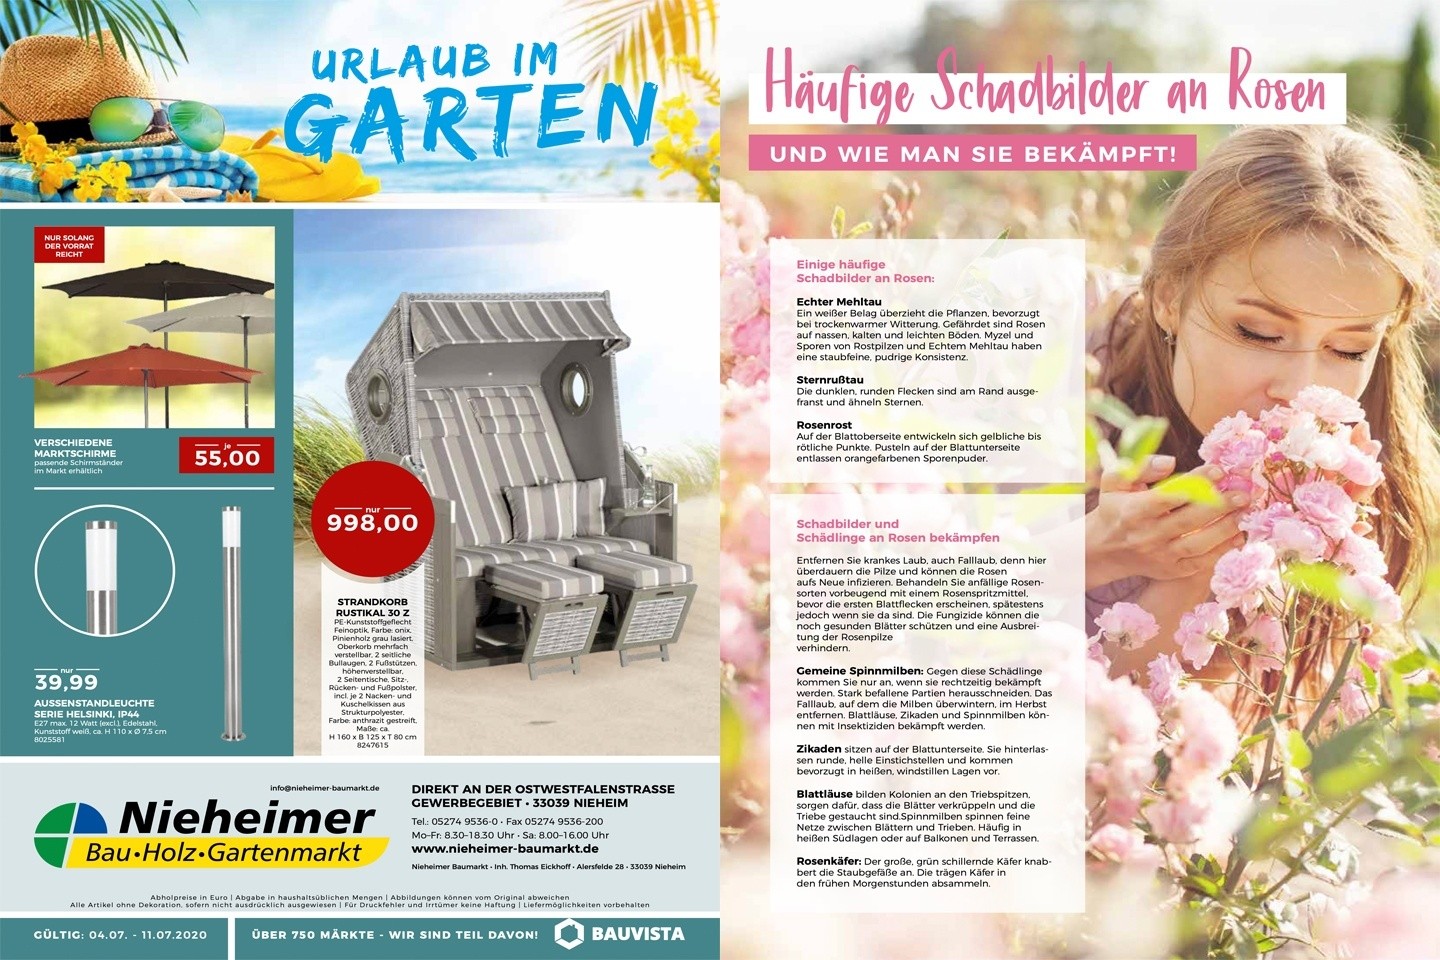 Urlaub im Garten - Sonderangebote unseres Partners Nieheimer Baumarkt